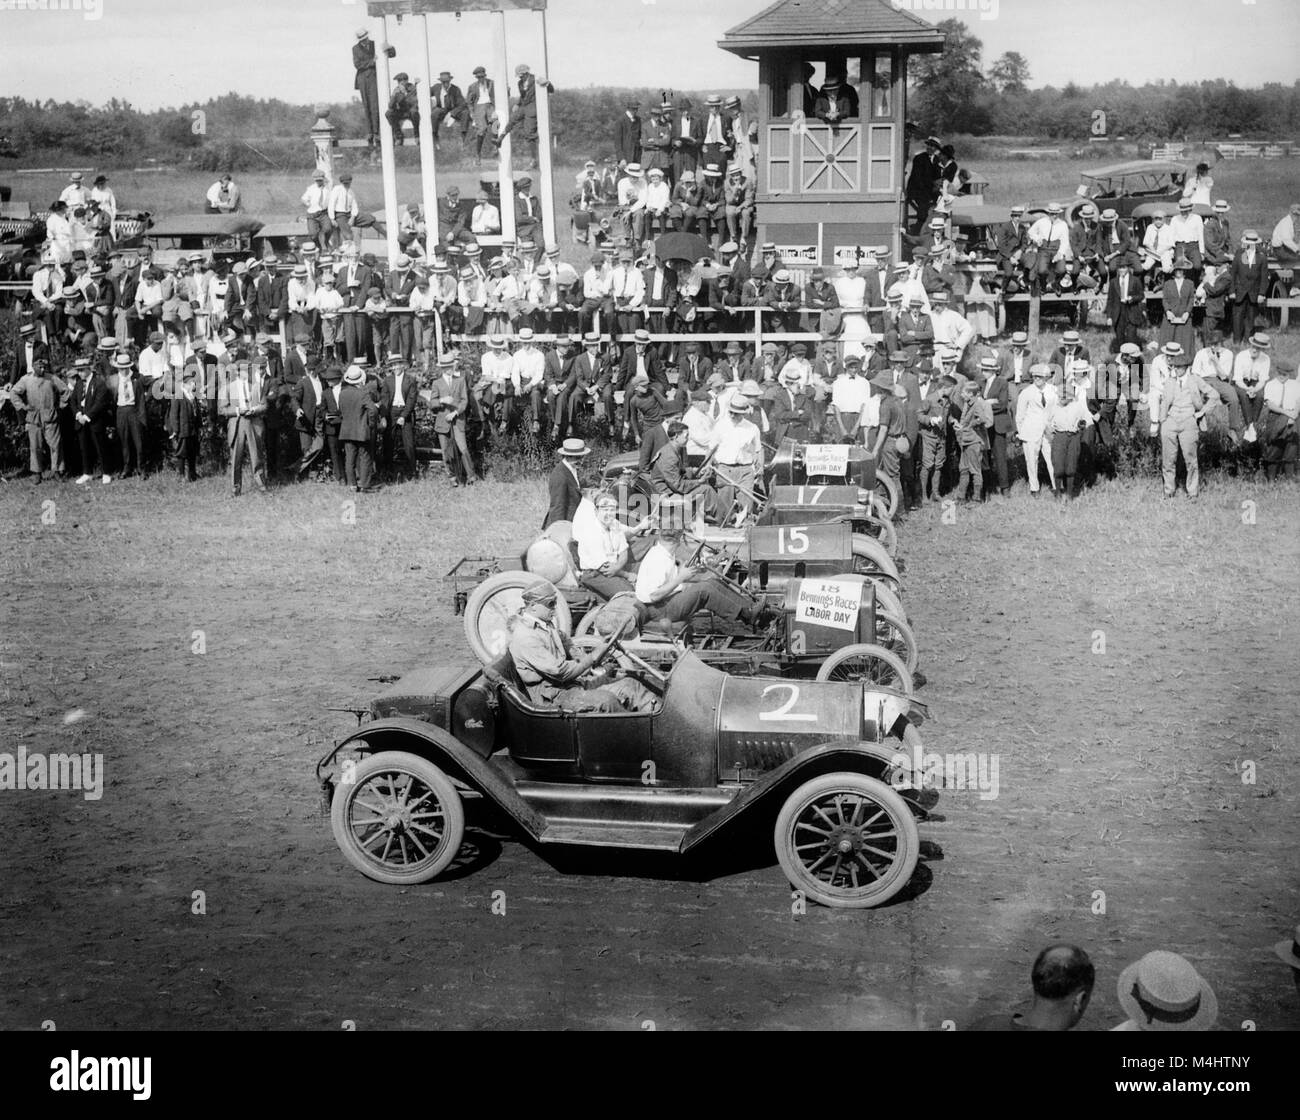 Le sport automobile, voiture de course sur piste de course au début, ca. 1930, années 30, emplacement exact inconnu, USA Banque D'Images